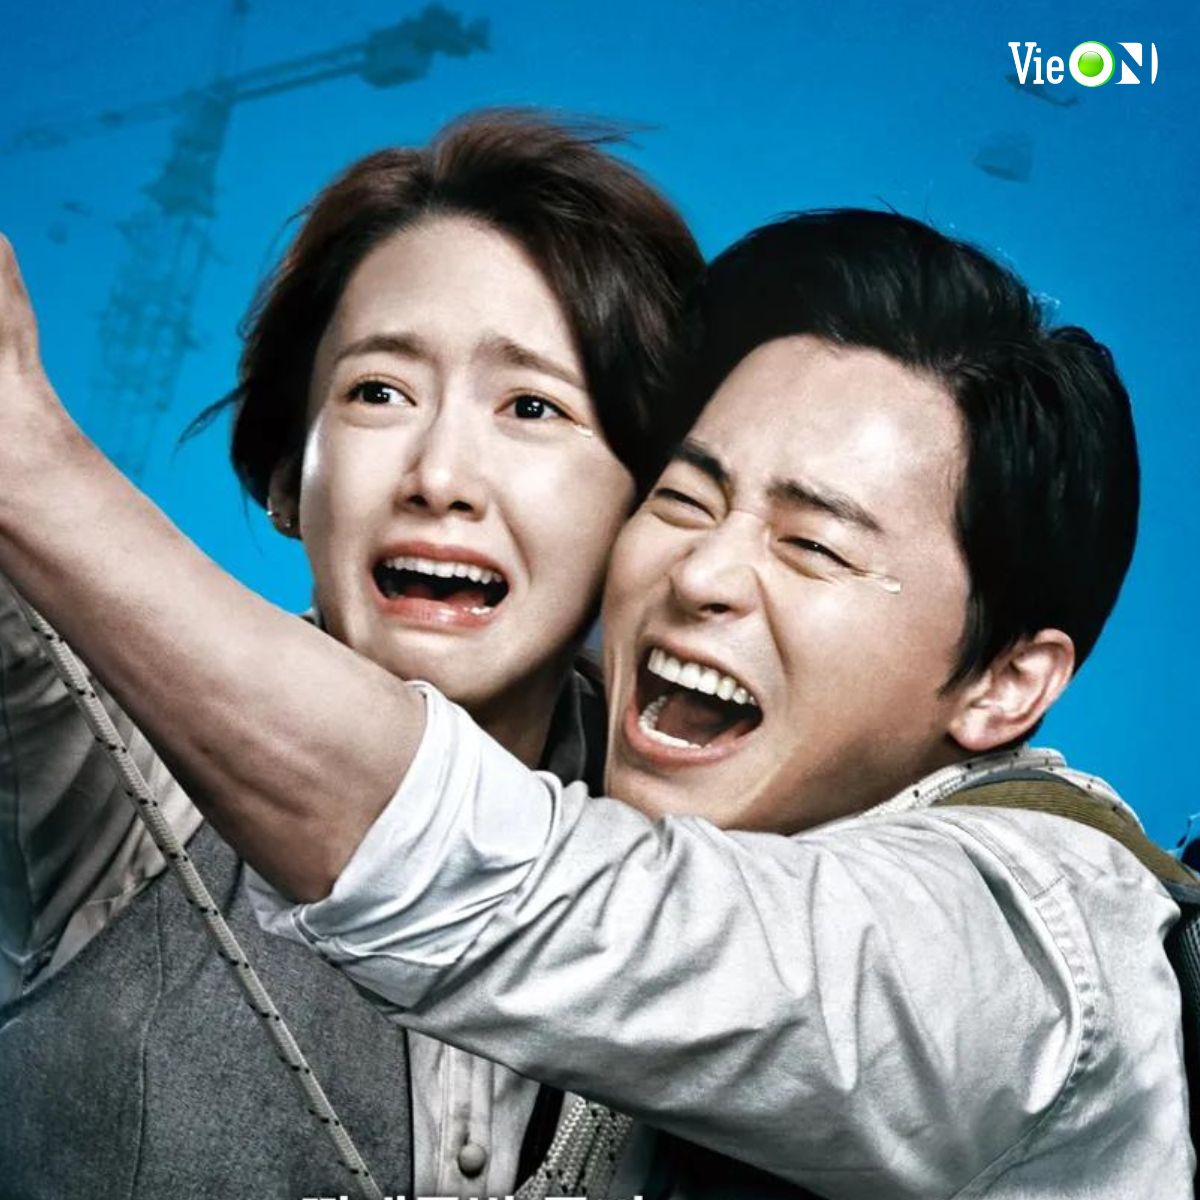 “Cười nội thương” với 8 phim điện ảnh xứ Hàn: “Bỗng Dưng Trúng Số” quăng miếng không gượng ép - ảnh 3